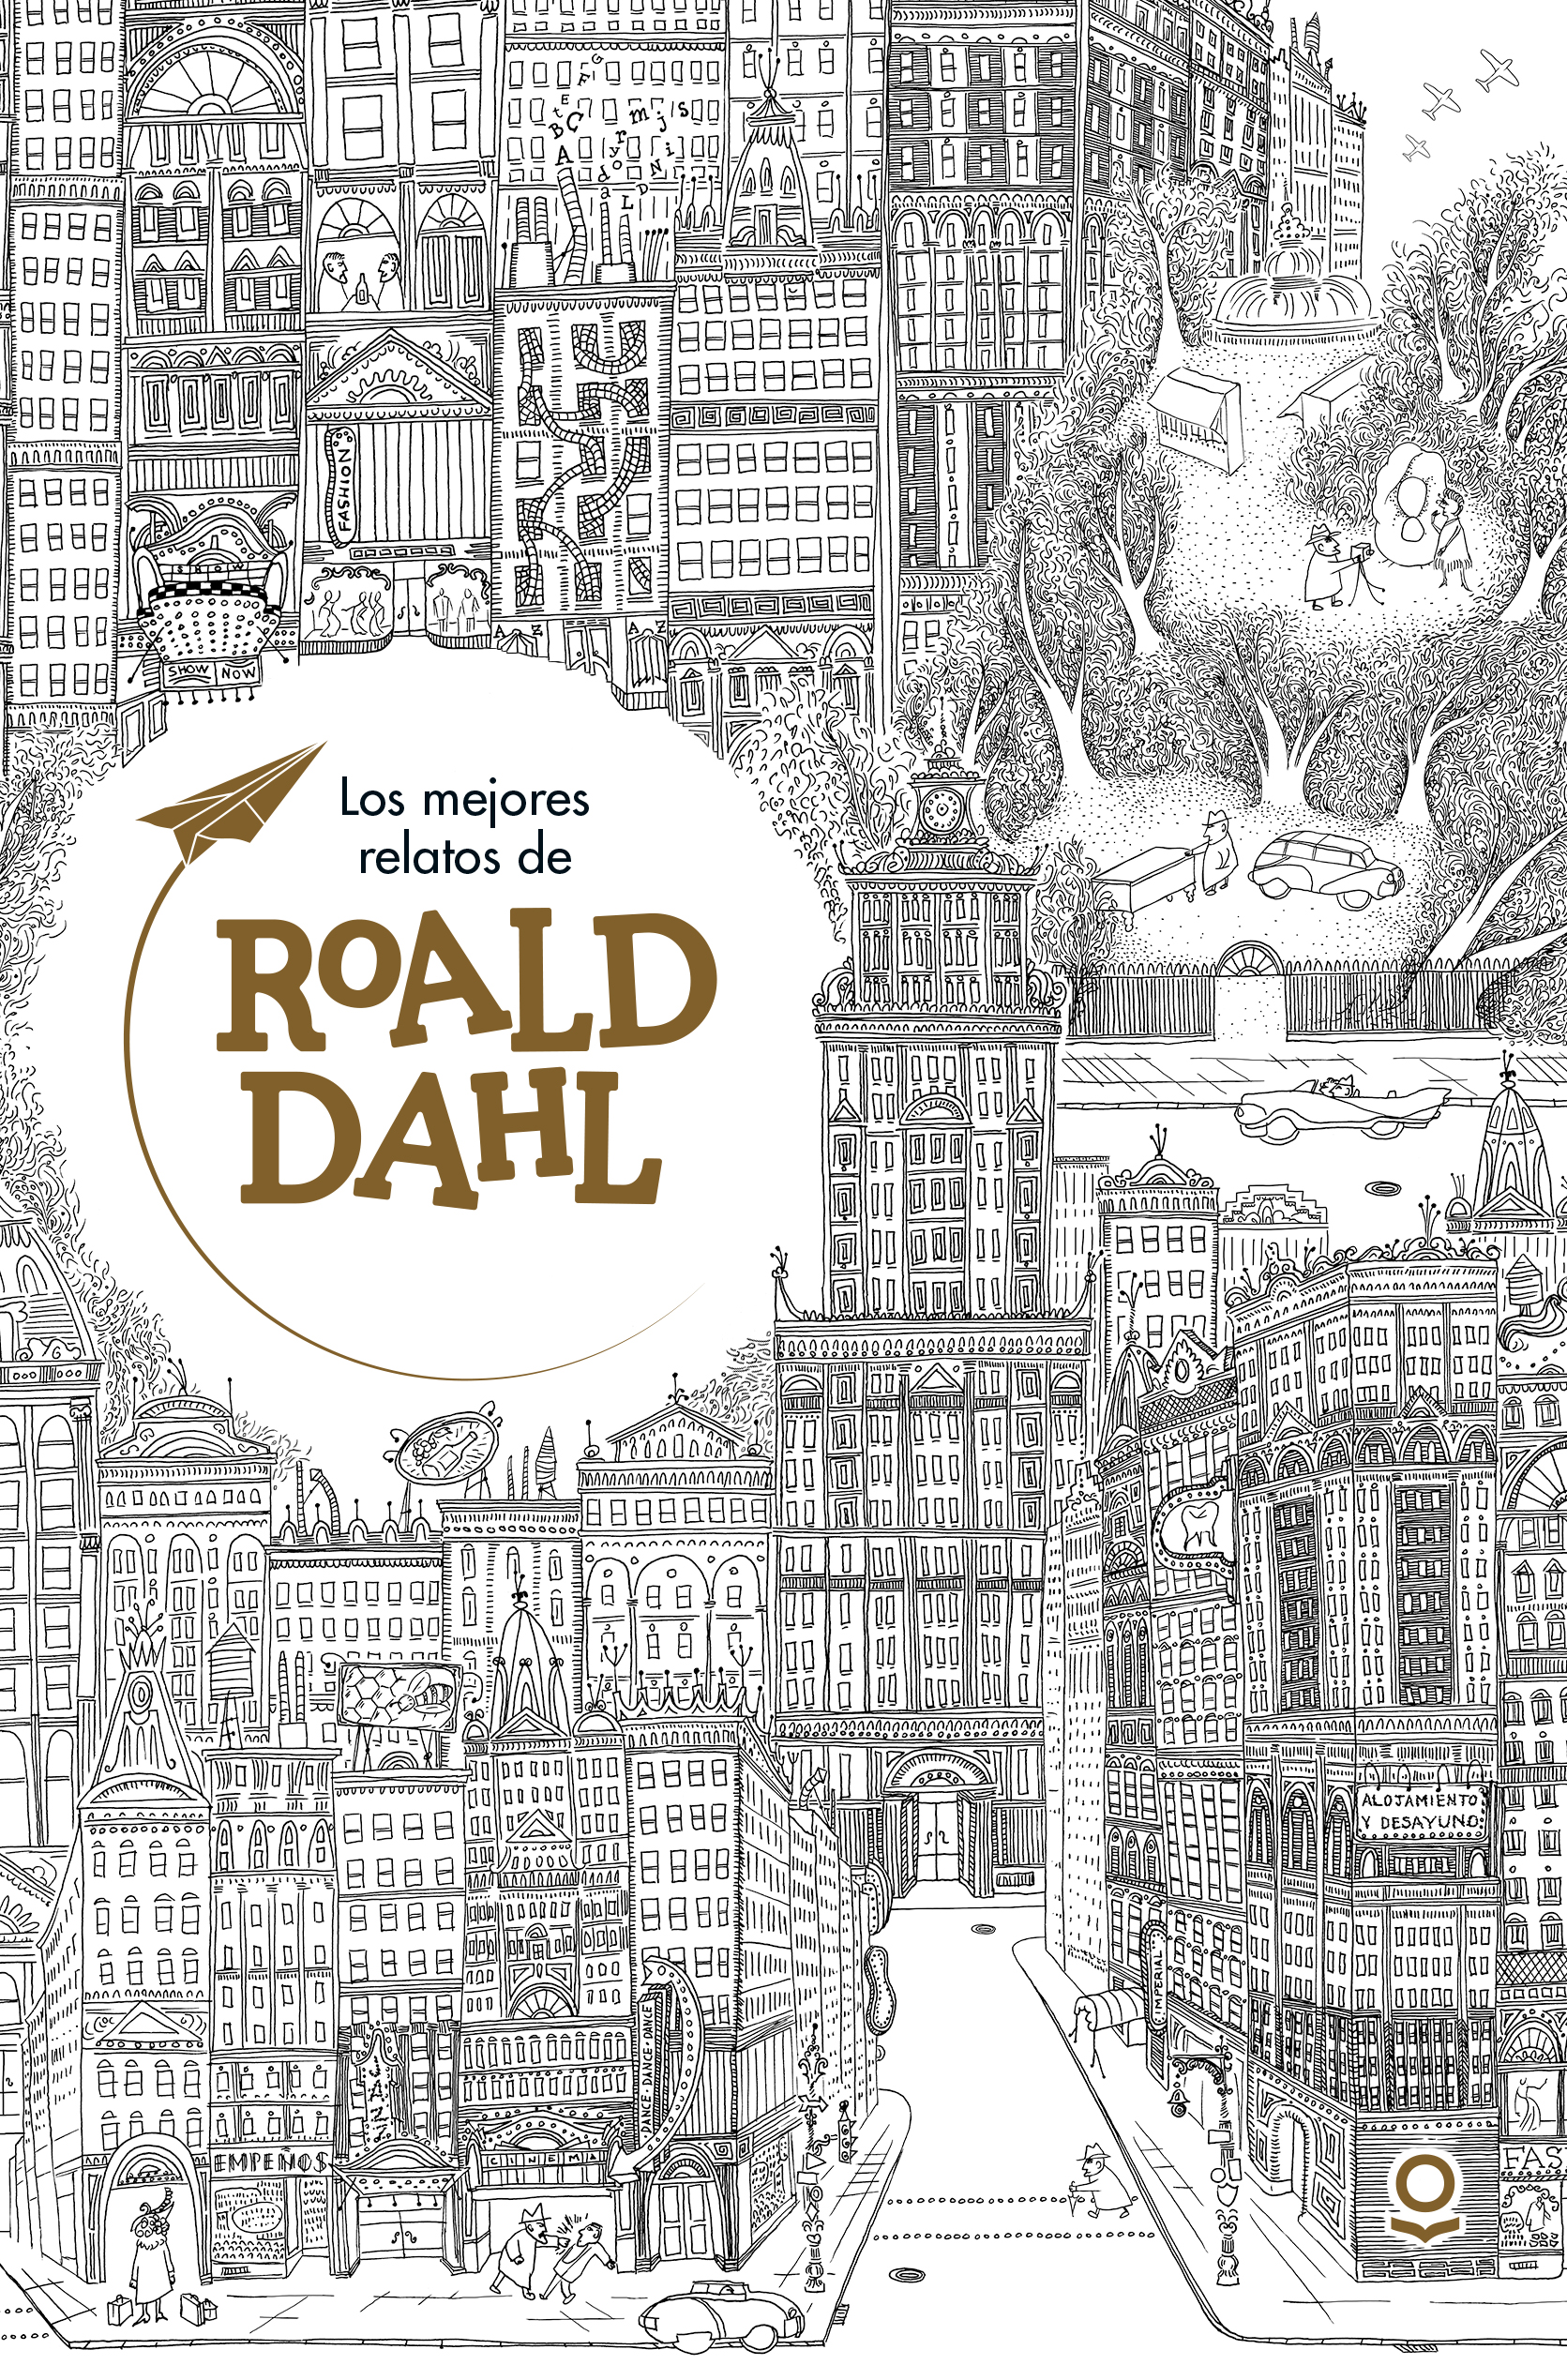 Empírico partido Democrático Animado Los mejores relatos de Roald Dahl